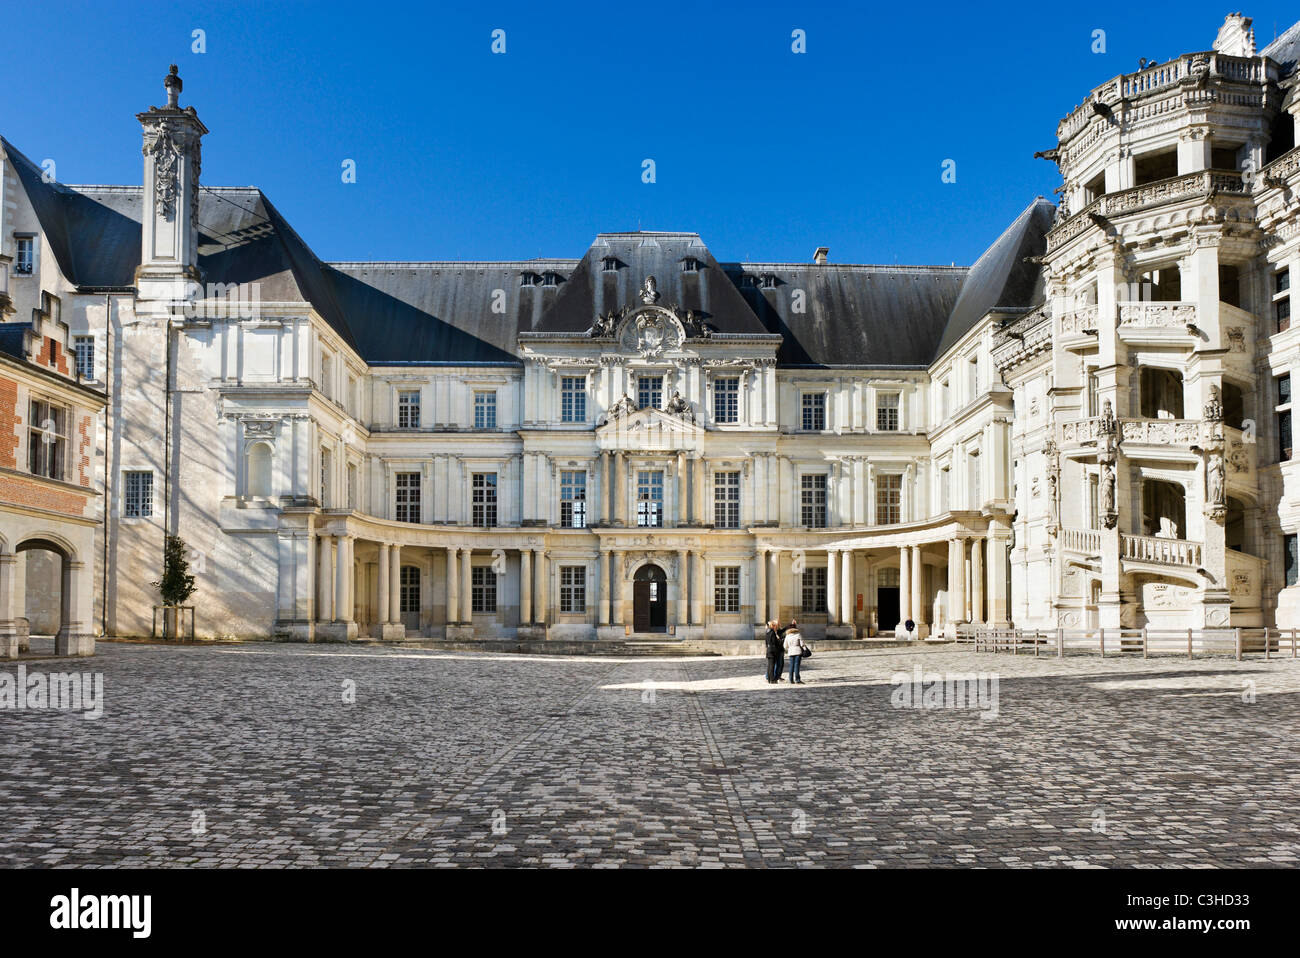 La Gaston d'Orléans et François J'ailes, Château de Blois, Loire, France Banque D'Images